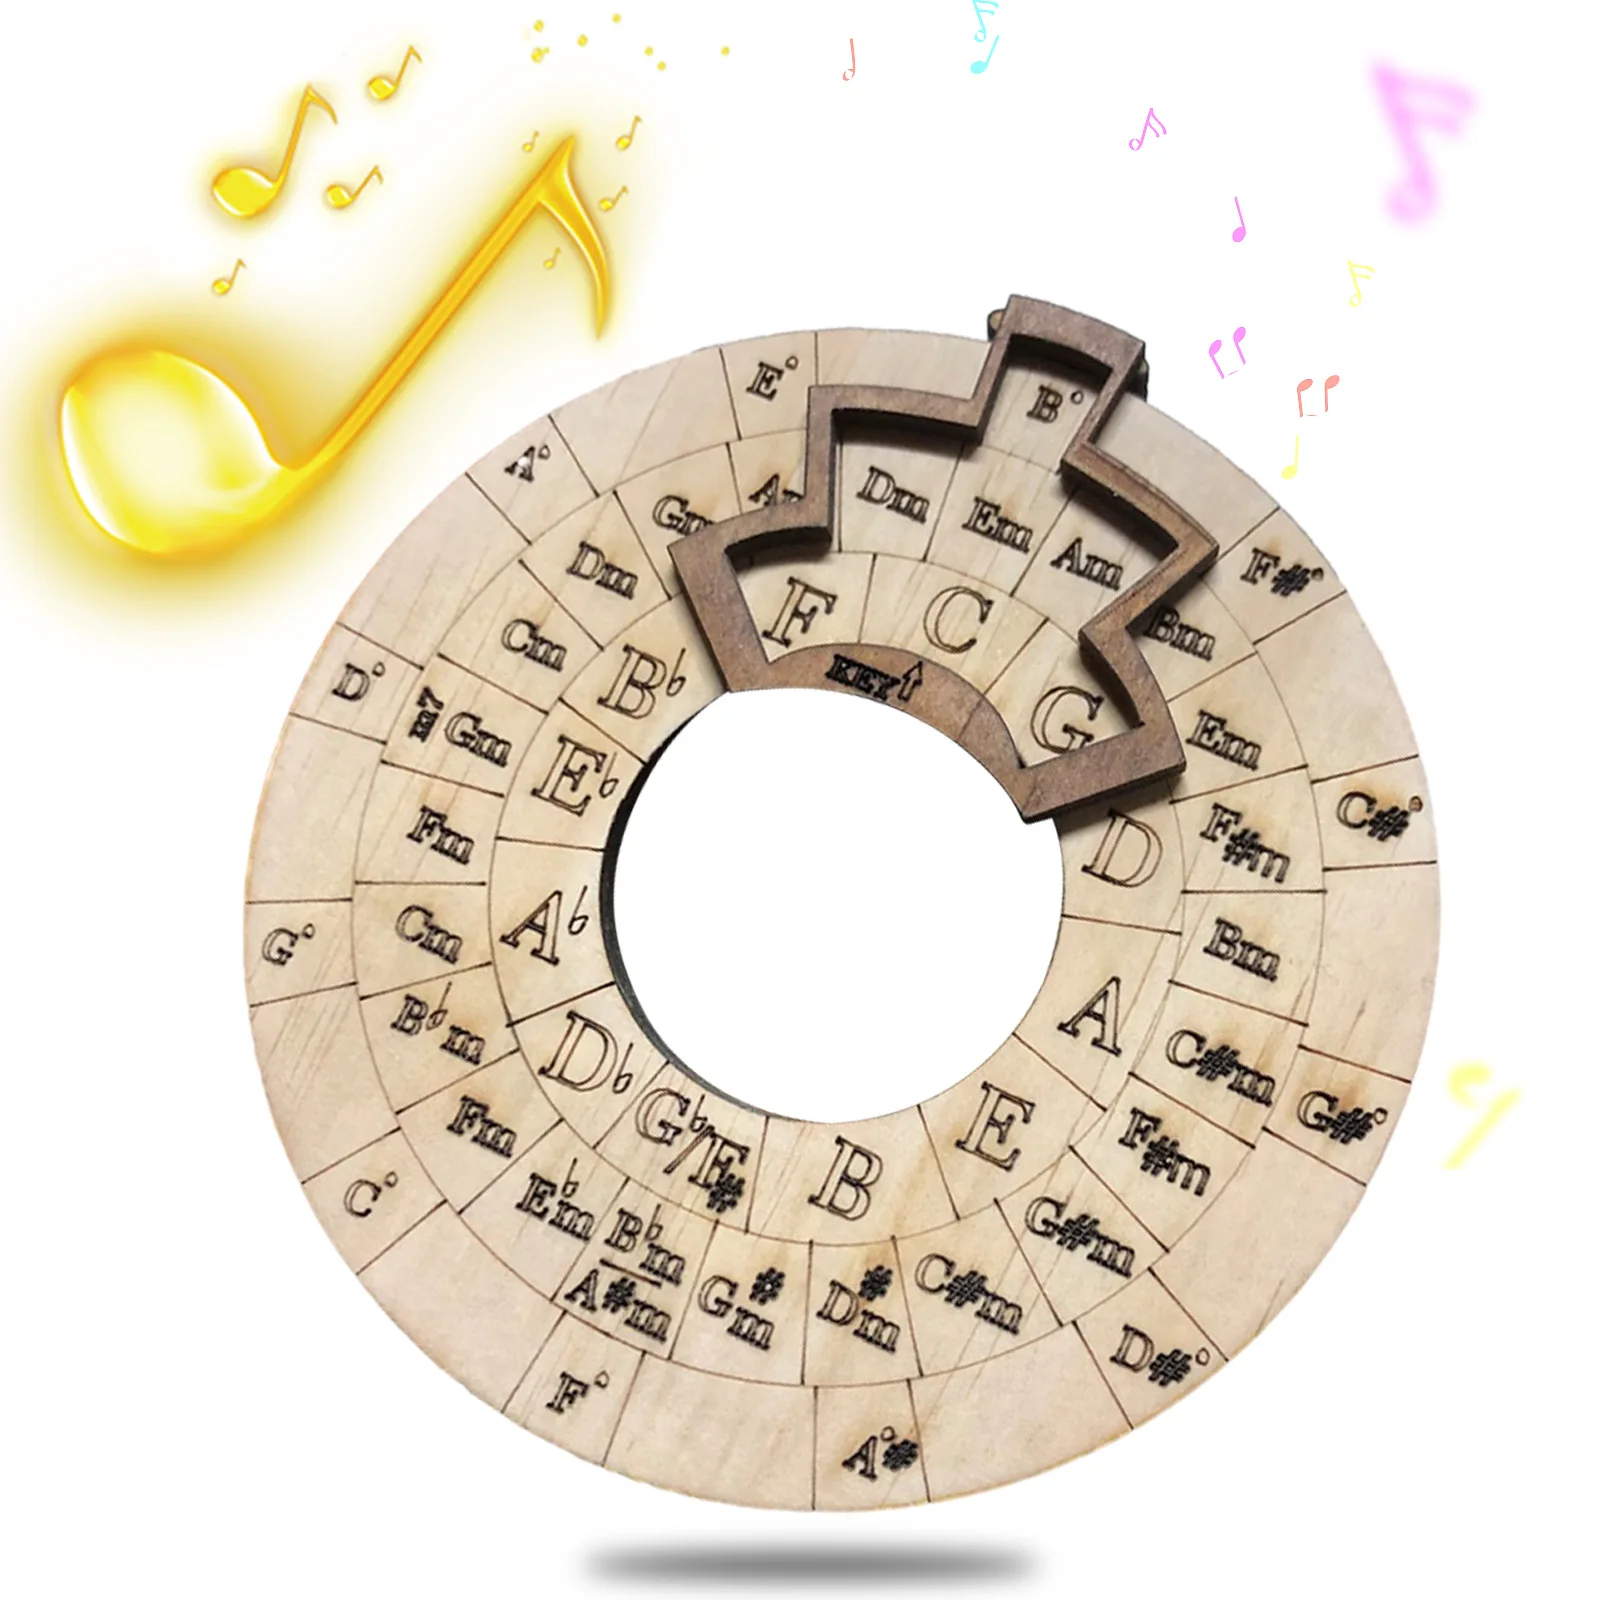 Деревянный мелодический инструмент Музыкальный инструмент Wood Melody Maker Circle of Fifths Wheel Музыкальный обучающий инструмент